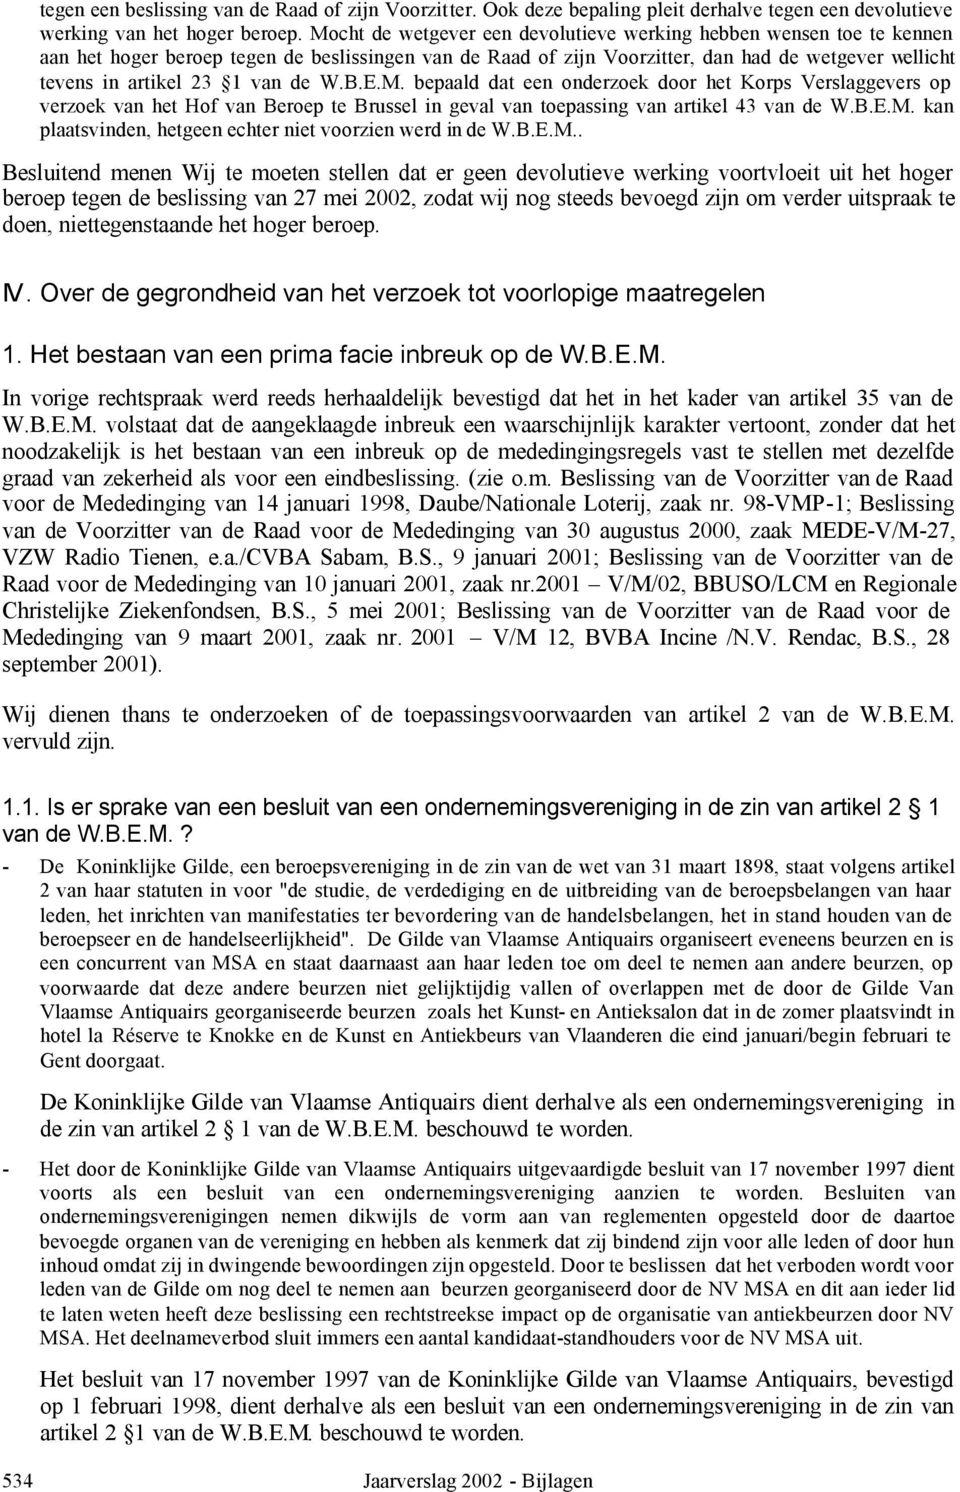 van de W.B.E.M. bepaald dat een onderzoek door het Korps Verslaggevers op verzoek van het Hof van Beroep te Brussel in geval van toepassing van artikel 43 van de W.B.E.M. kan plaatsvinden, hetgeen echter niet voorzien werd in de W.